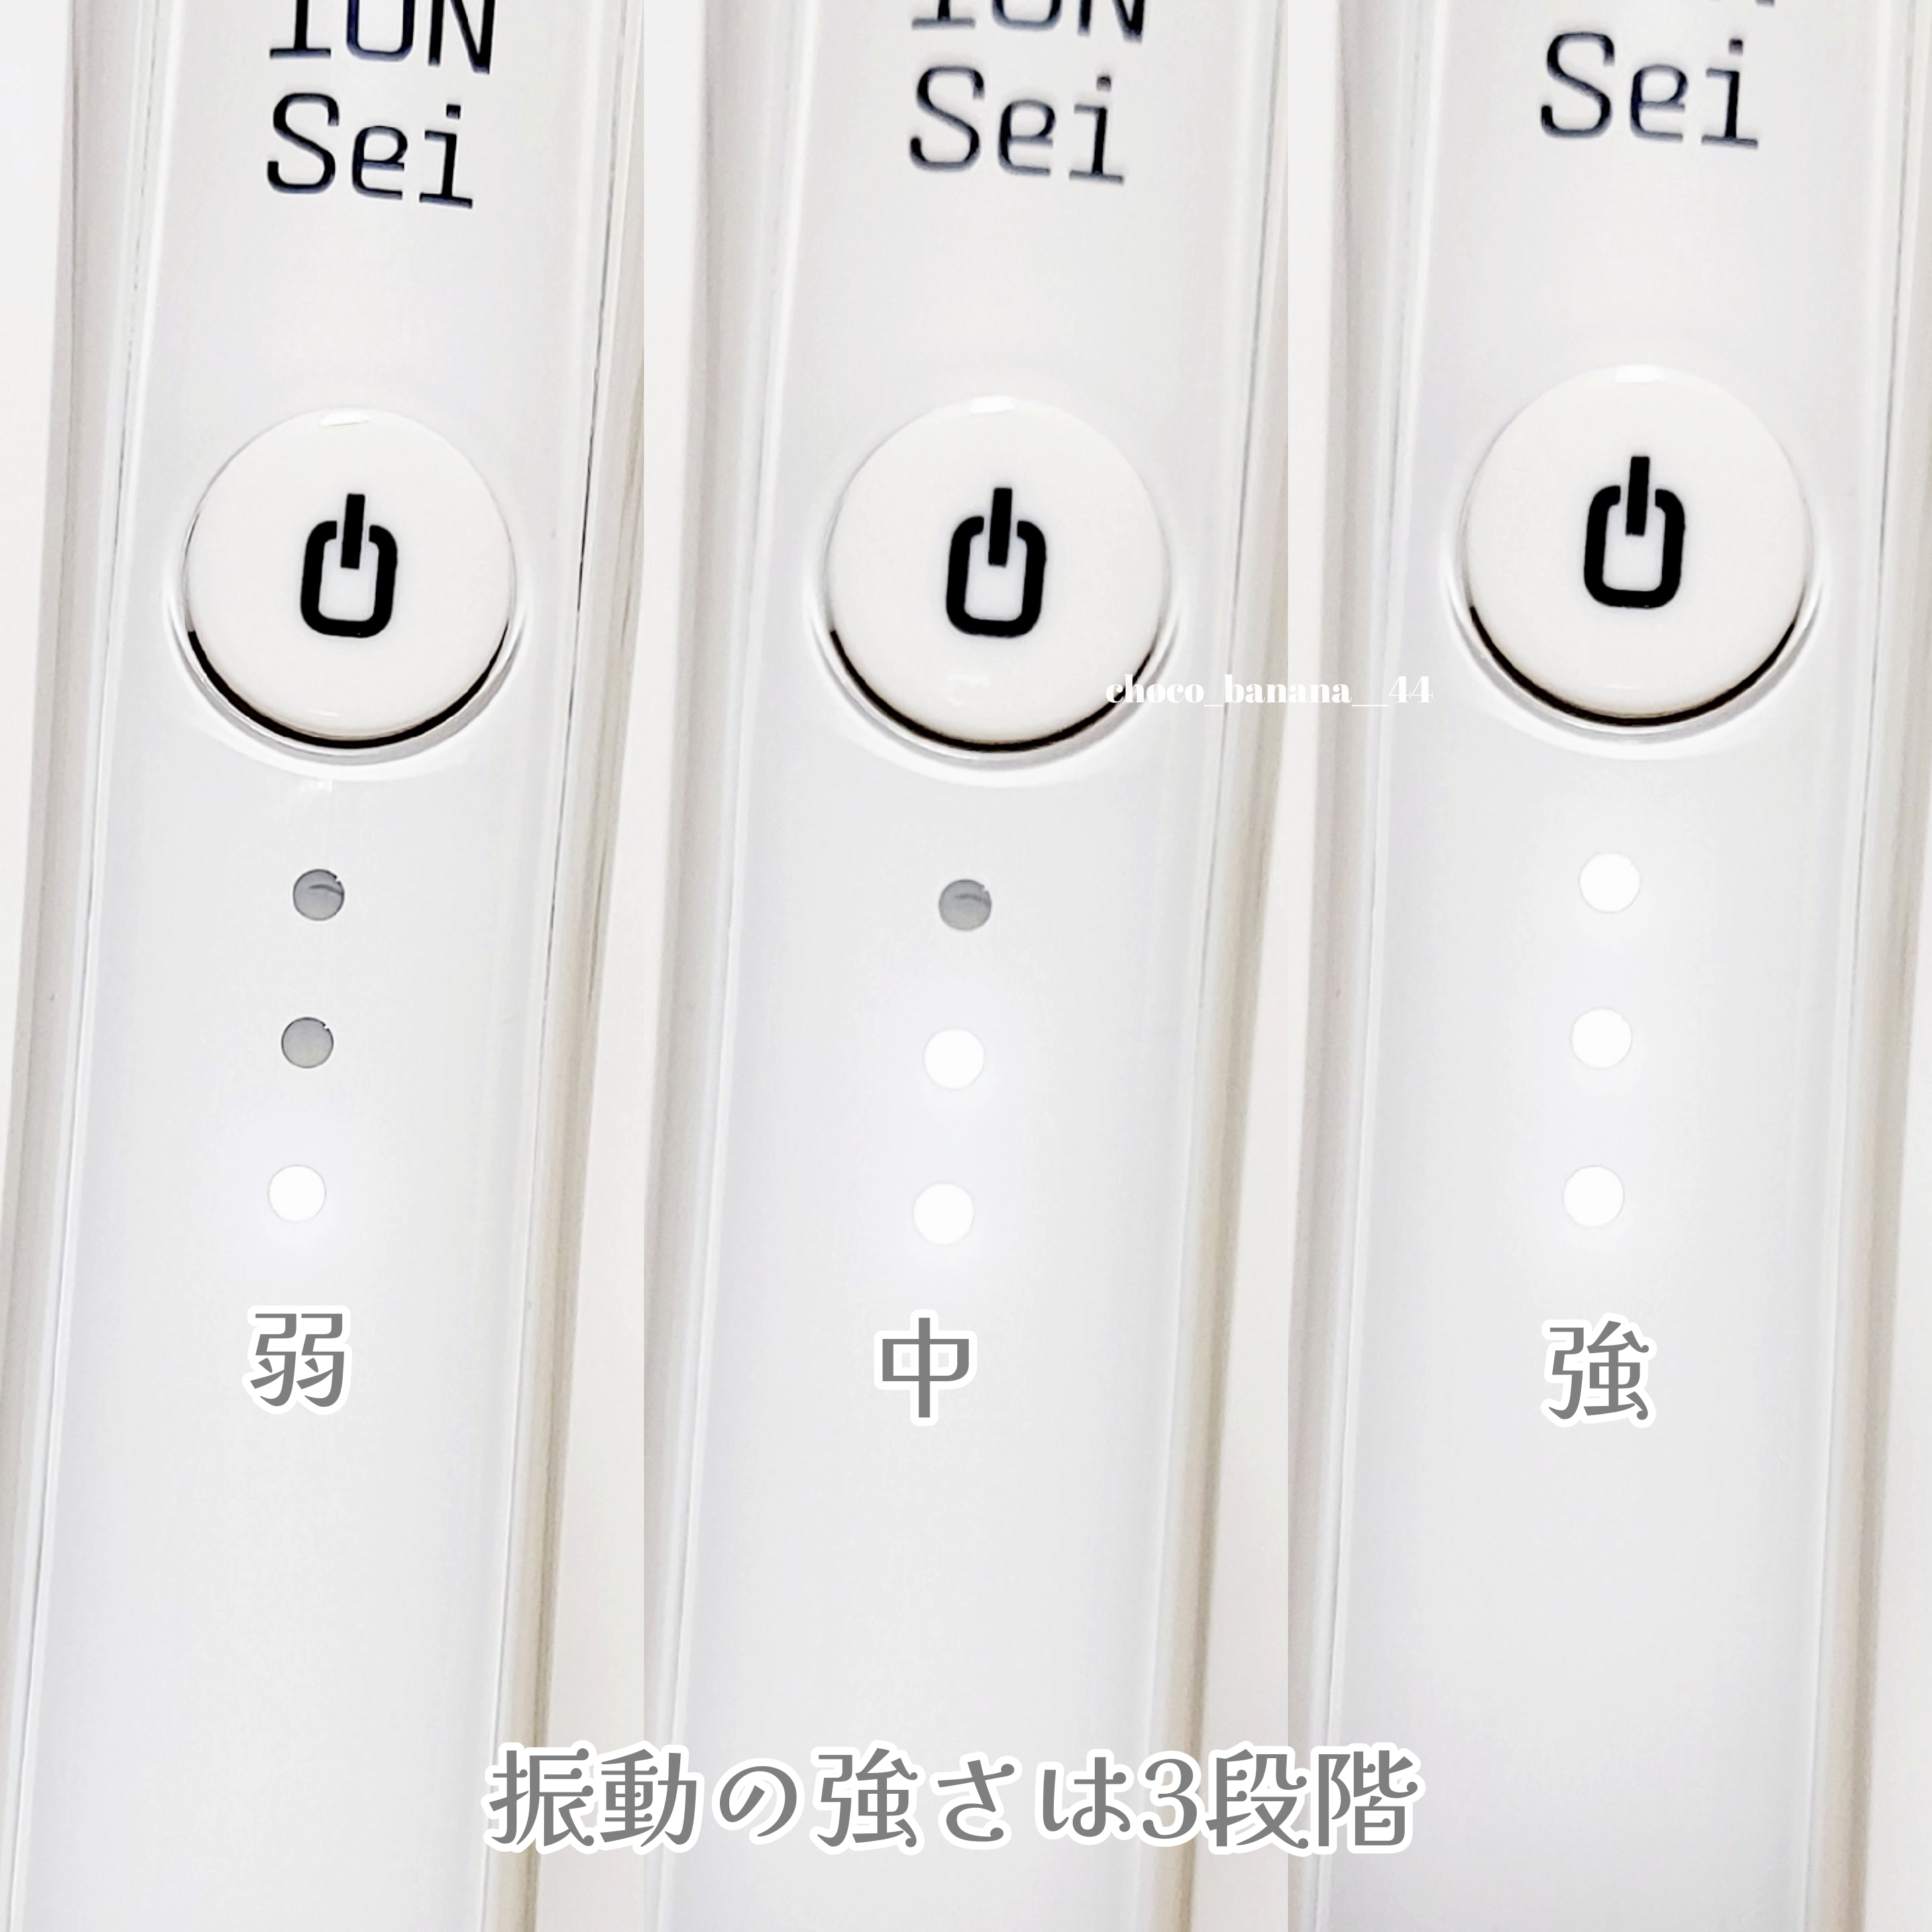 ION-Sei電動歯ブラシを使ったししさんのクチコミ画像4